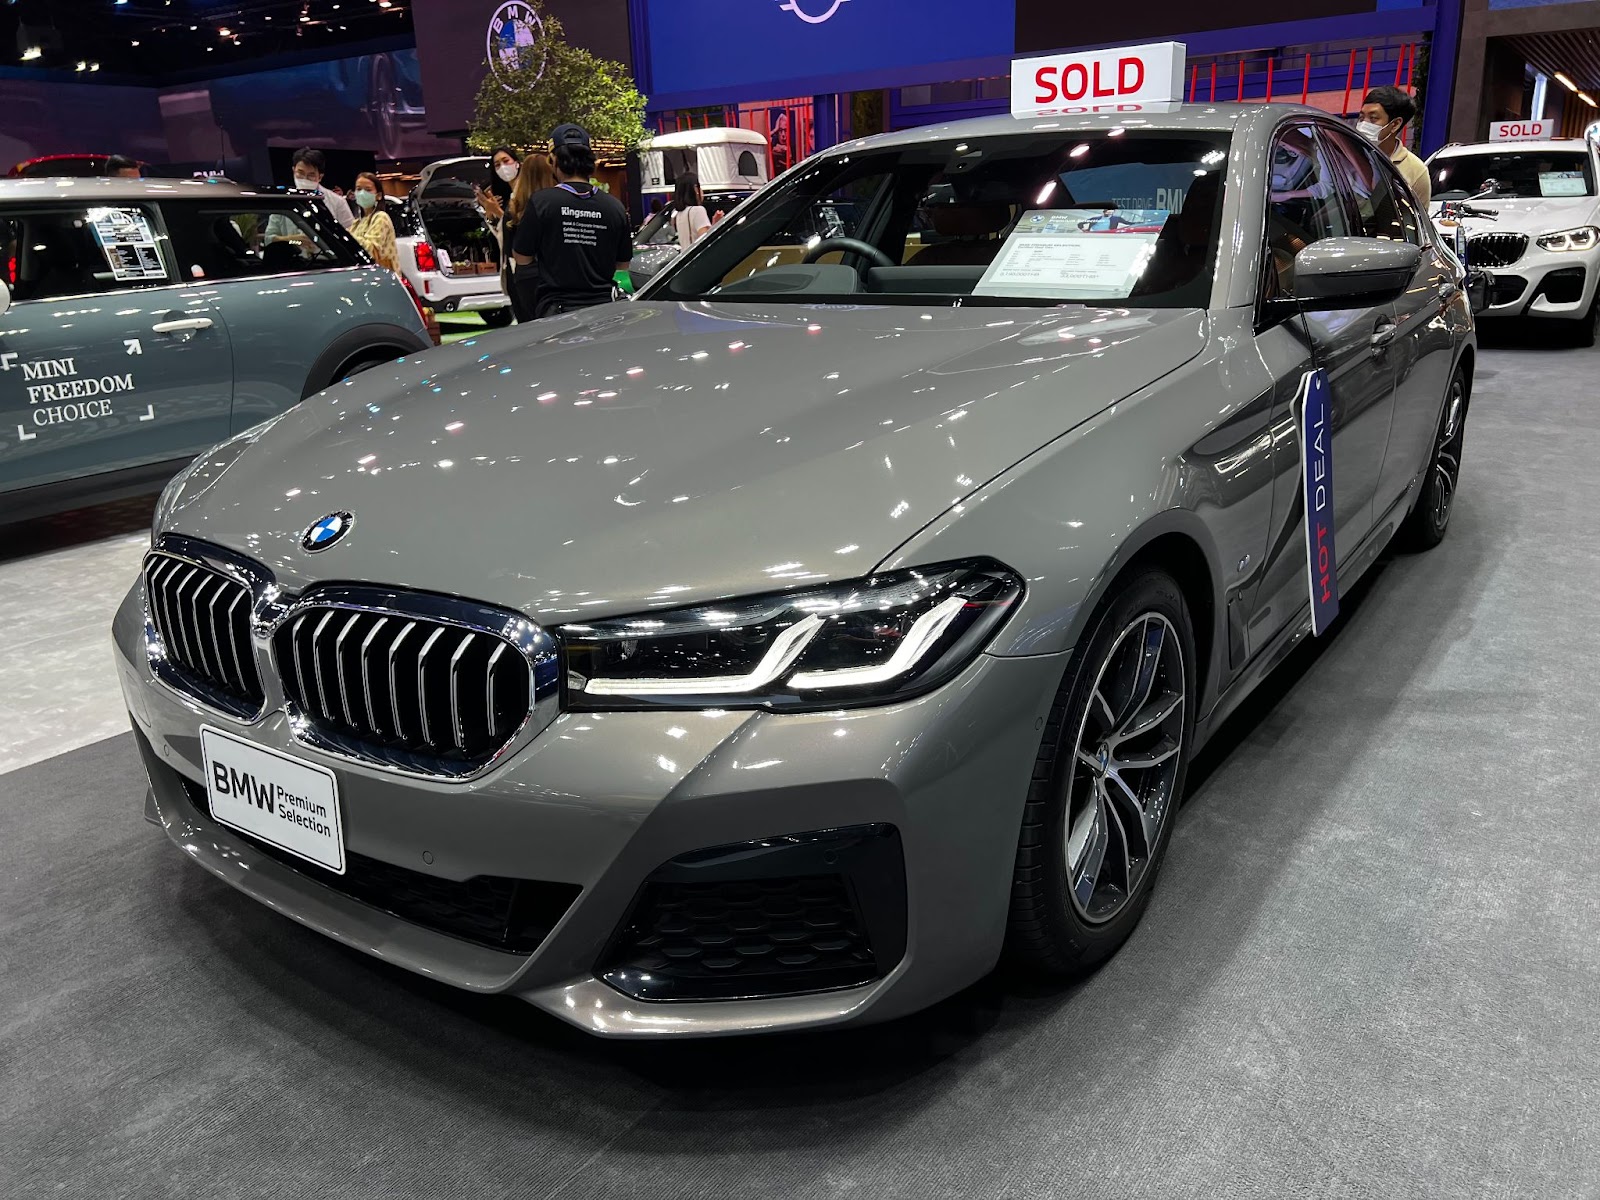 BMW 520d M Sport (3,190,000 บาท)